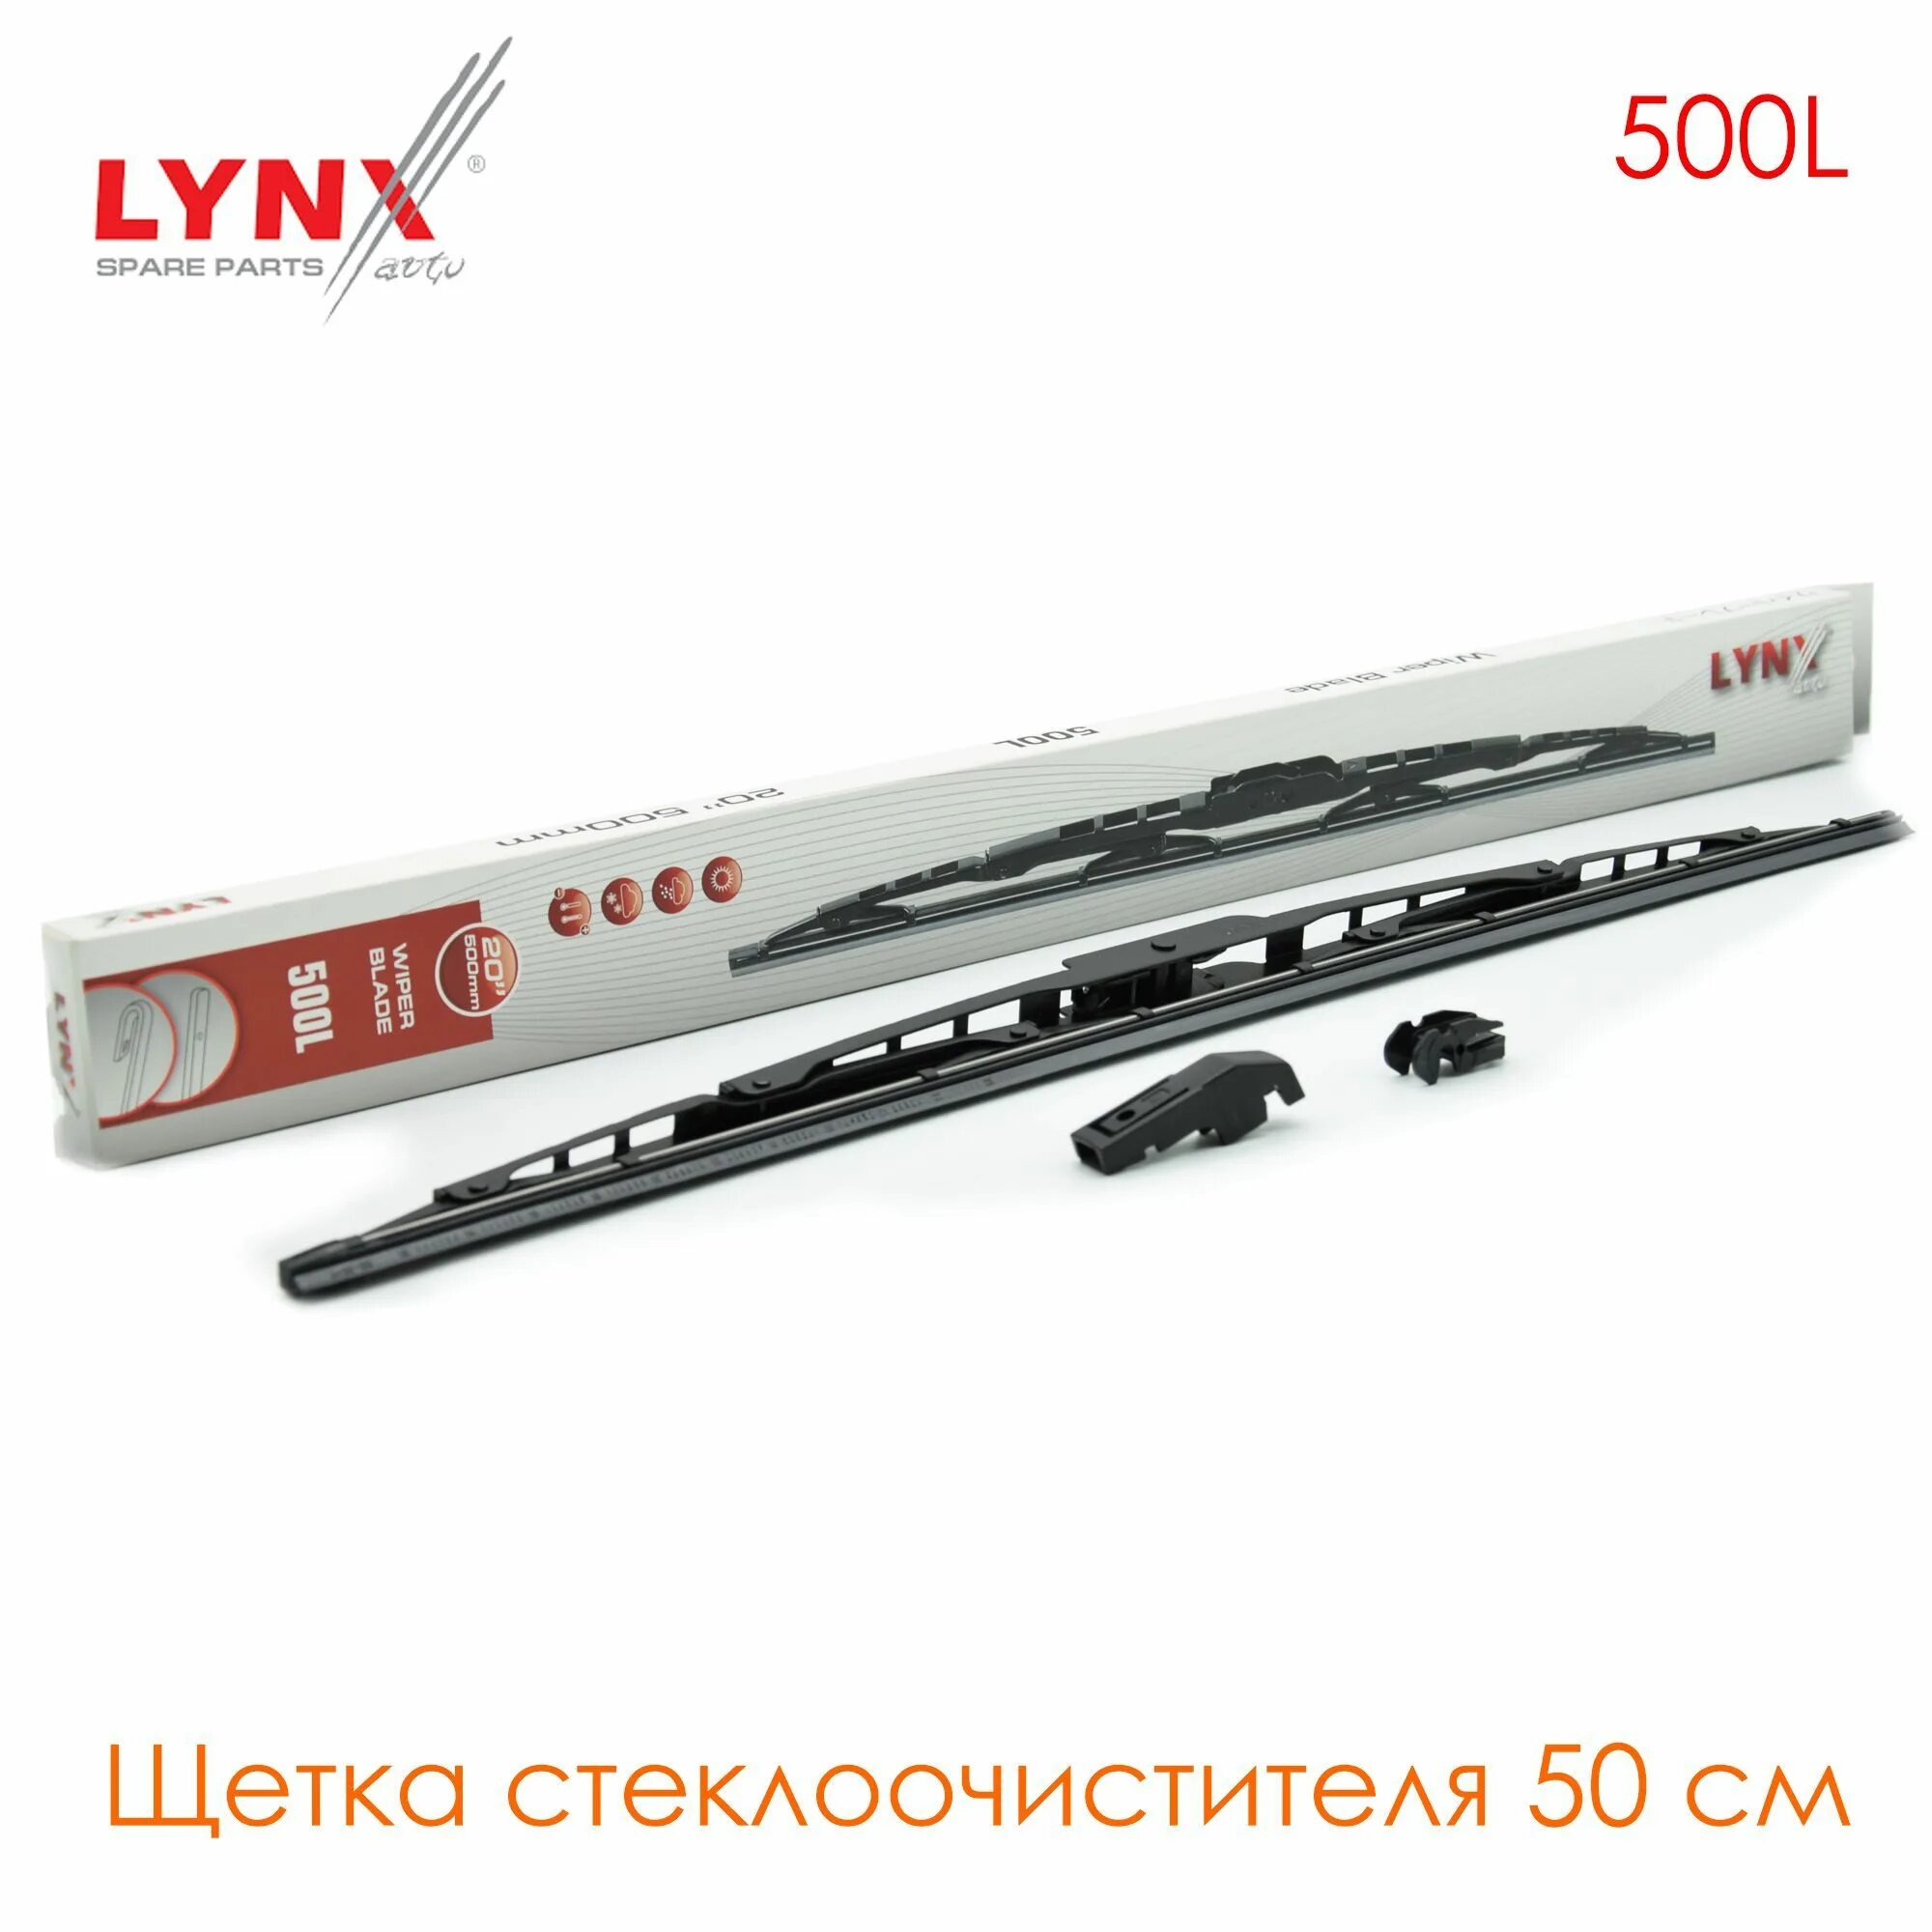 Щетка стеклоочистителя Lynx 500l. К-кт щеток стеклоочистителя Lynx 500мм. Каркасная щетка Lynx. Lynx : 500l.